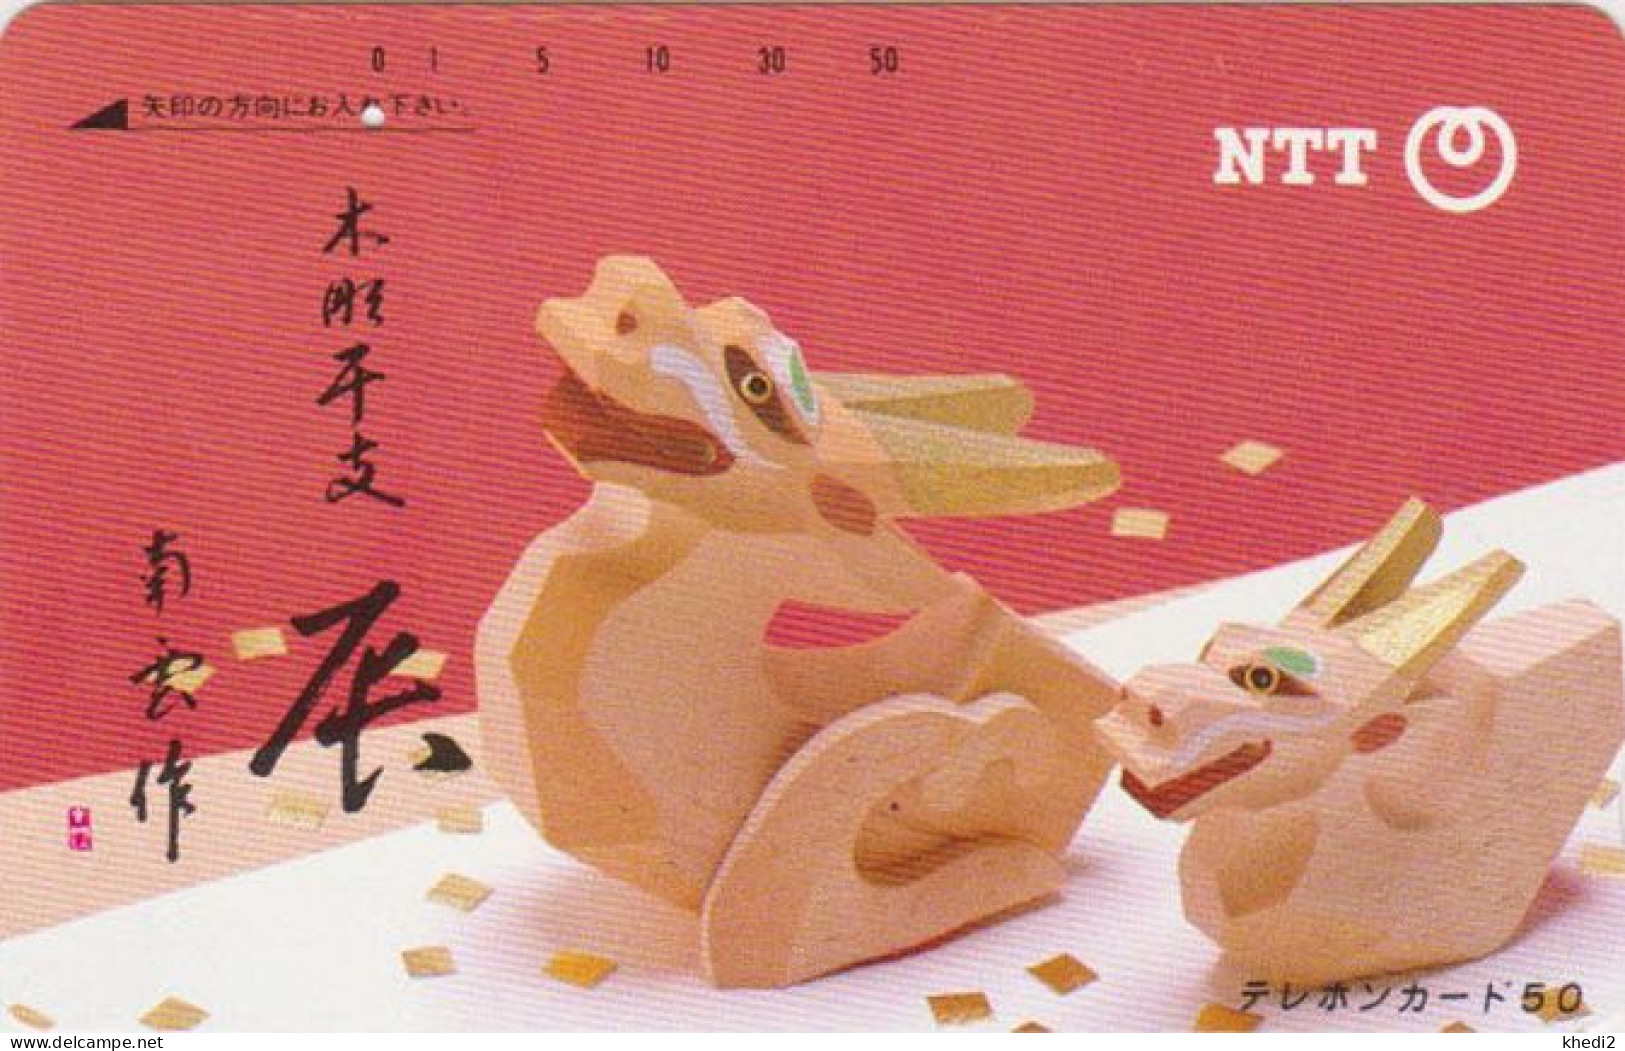 Rare Télécarte JAPON / NTT 330-094 ** ONE PUNCH ** - DRAGON Zodiaque - Horoscope Zodiac JAPAN Phonecard - Japon